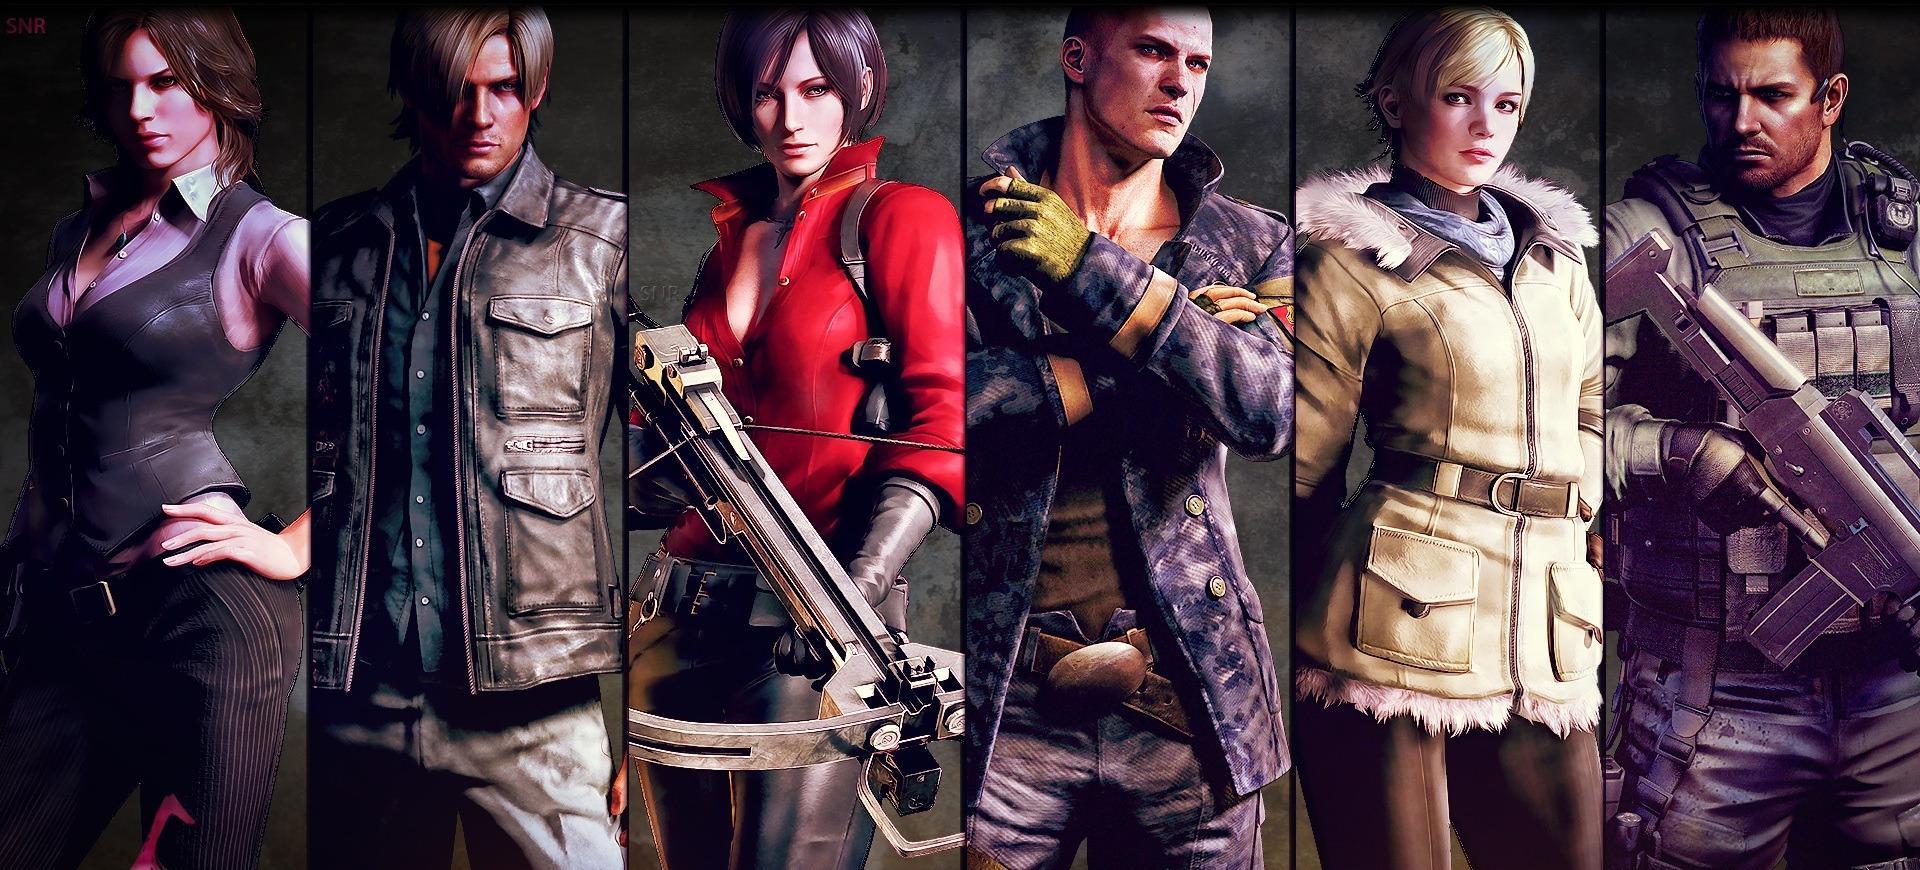 E3 2016 | Rộ tin đồn "Resident Evil 7" sẽ xuất hiện? - Tin Game